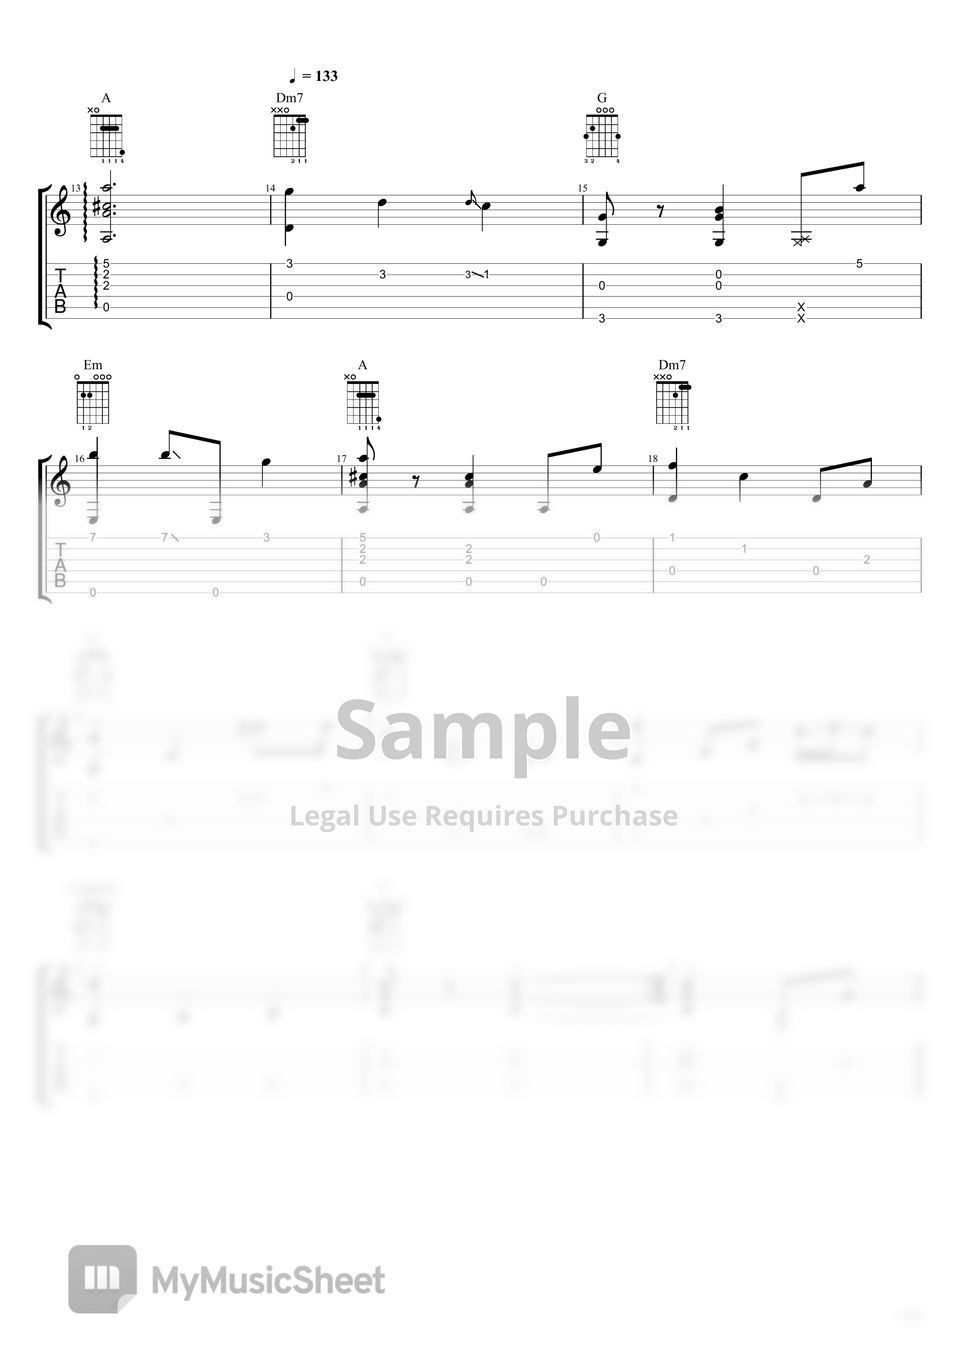 Disney Pixar's "Ratatouille" OST | Fingerstyle Guitar - Le Festin by Kenneth Acoustic